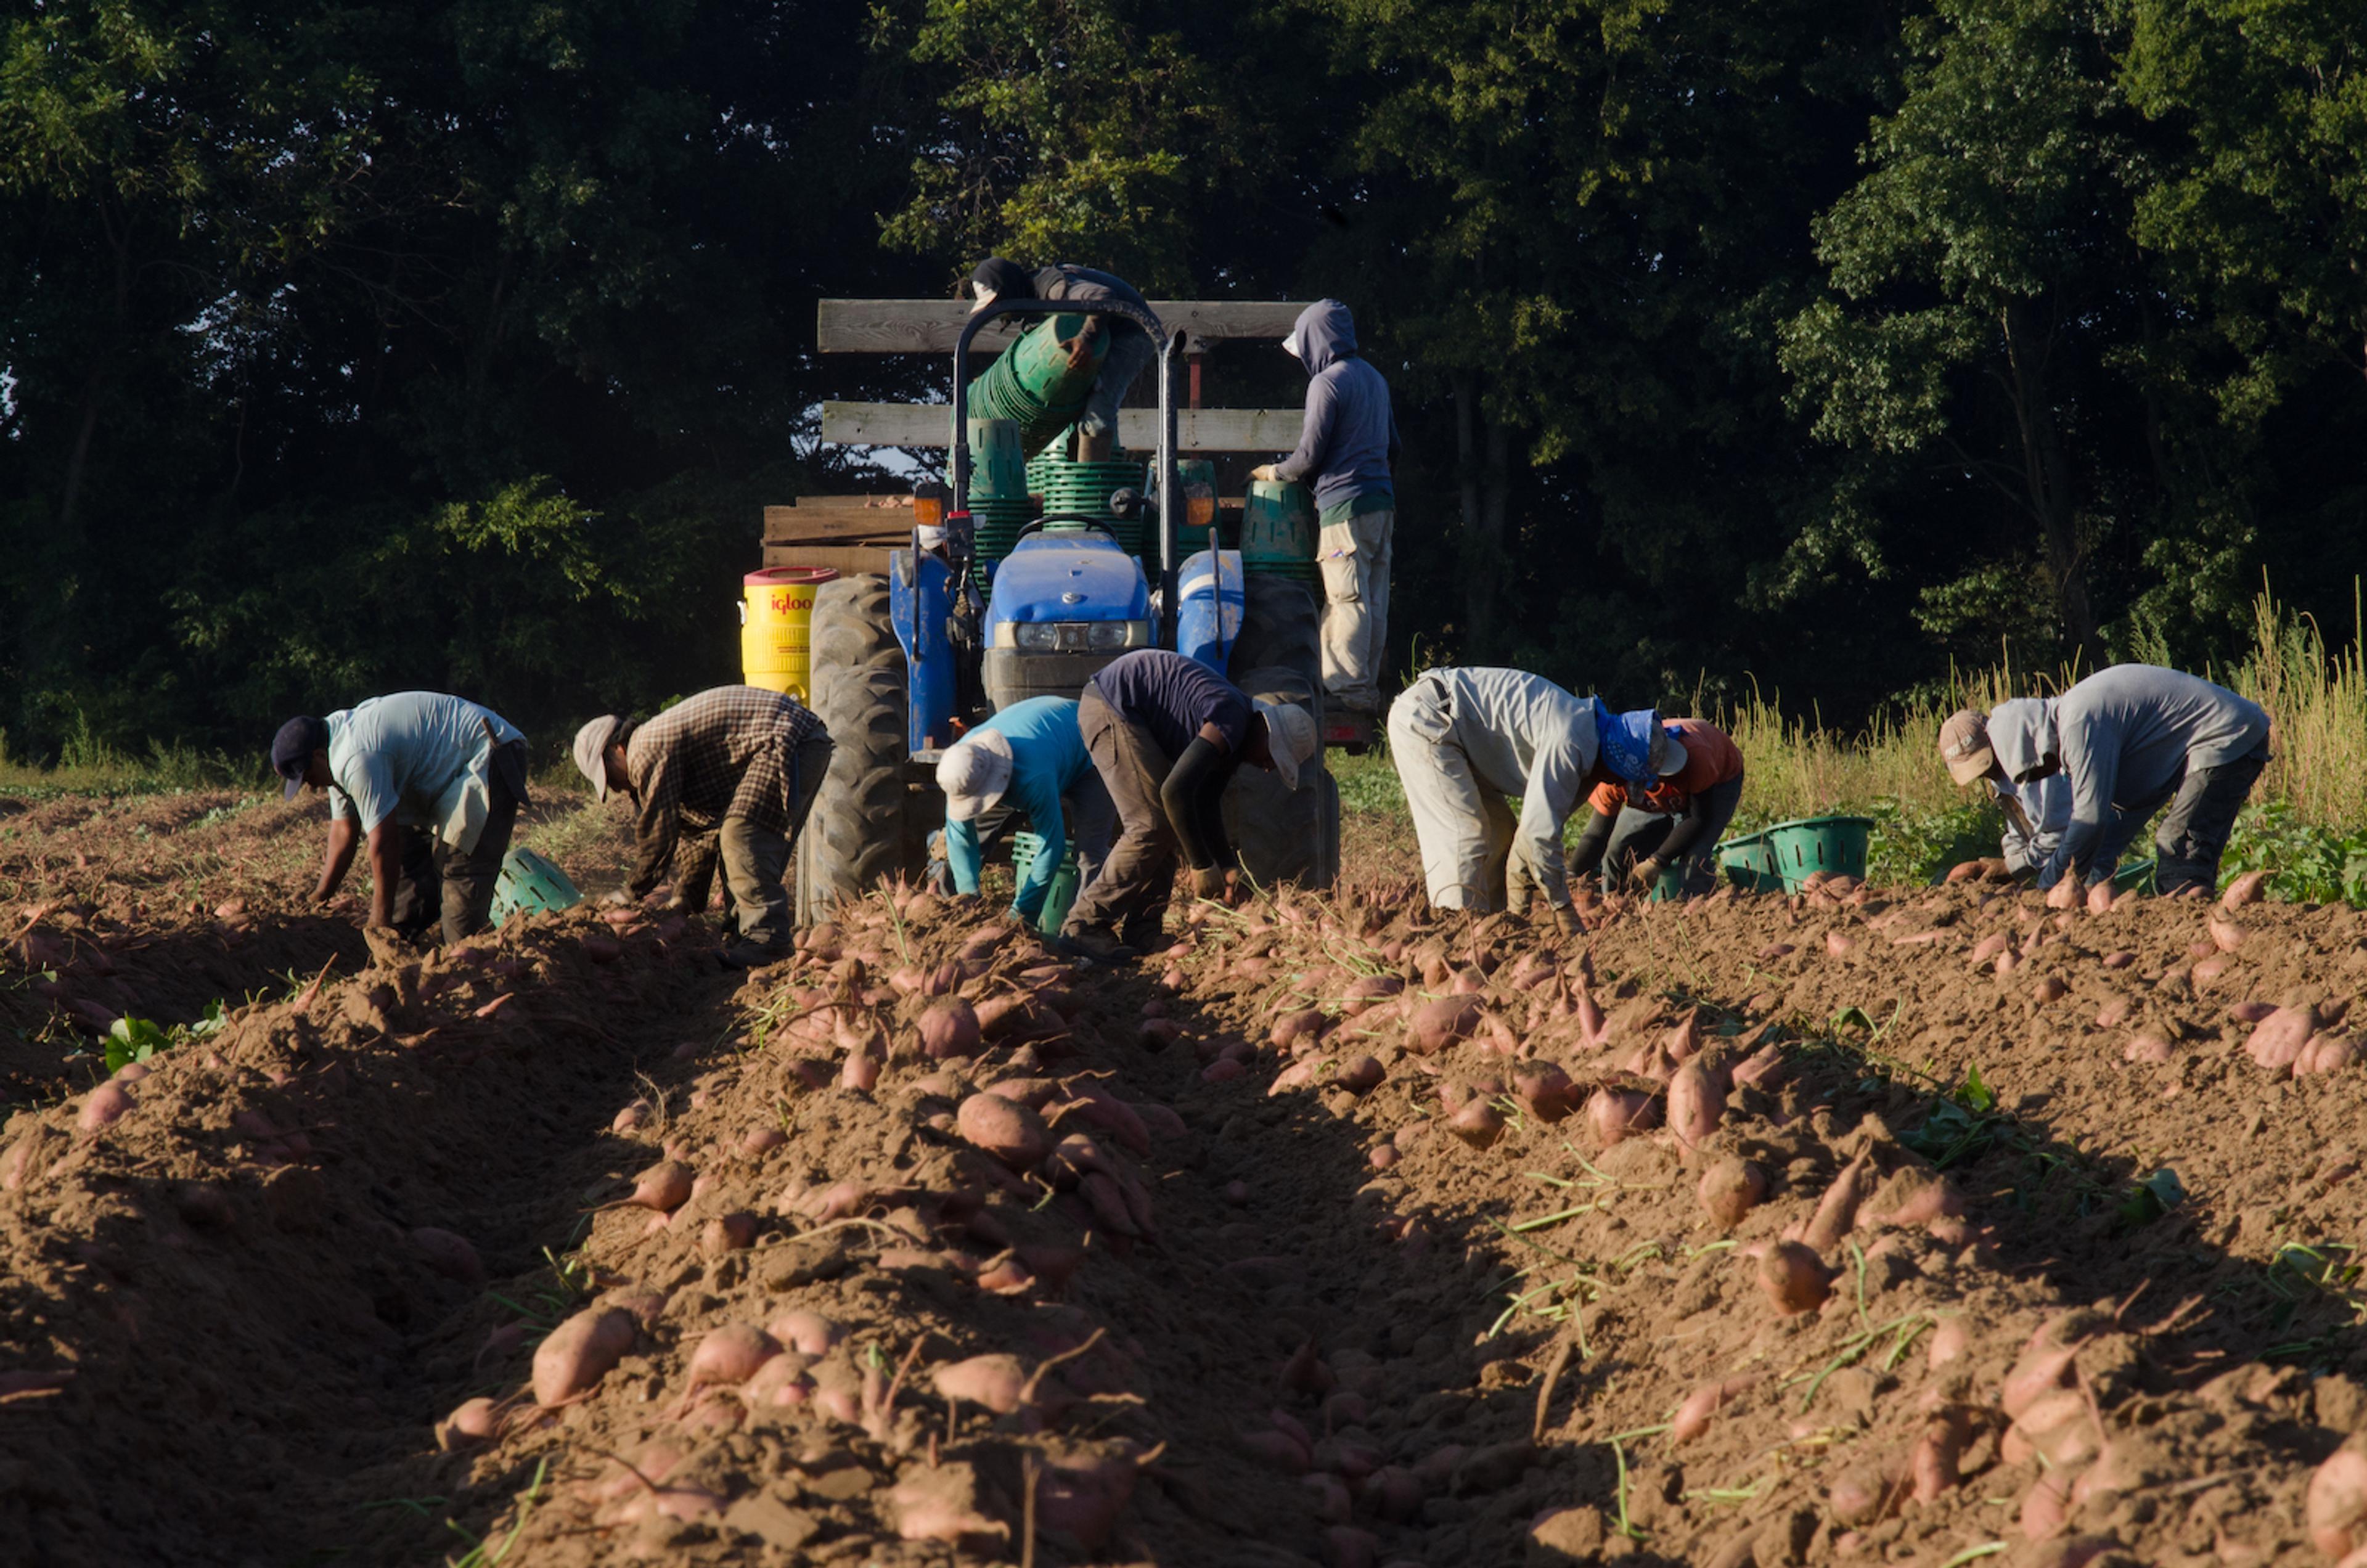 Migrant workers harvesting sweet potatoes in field